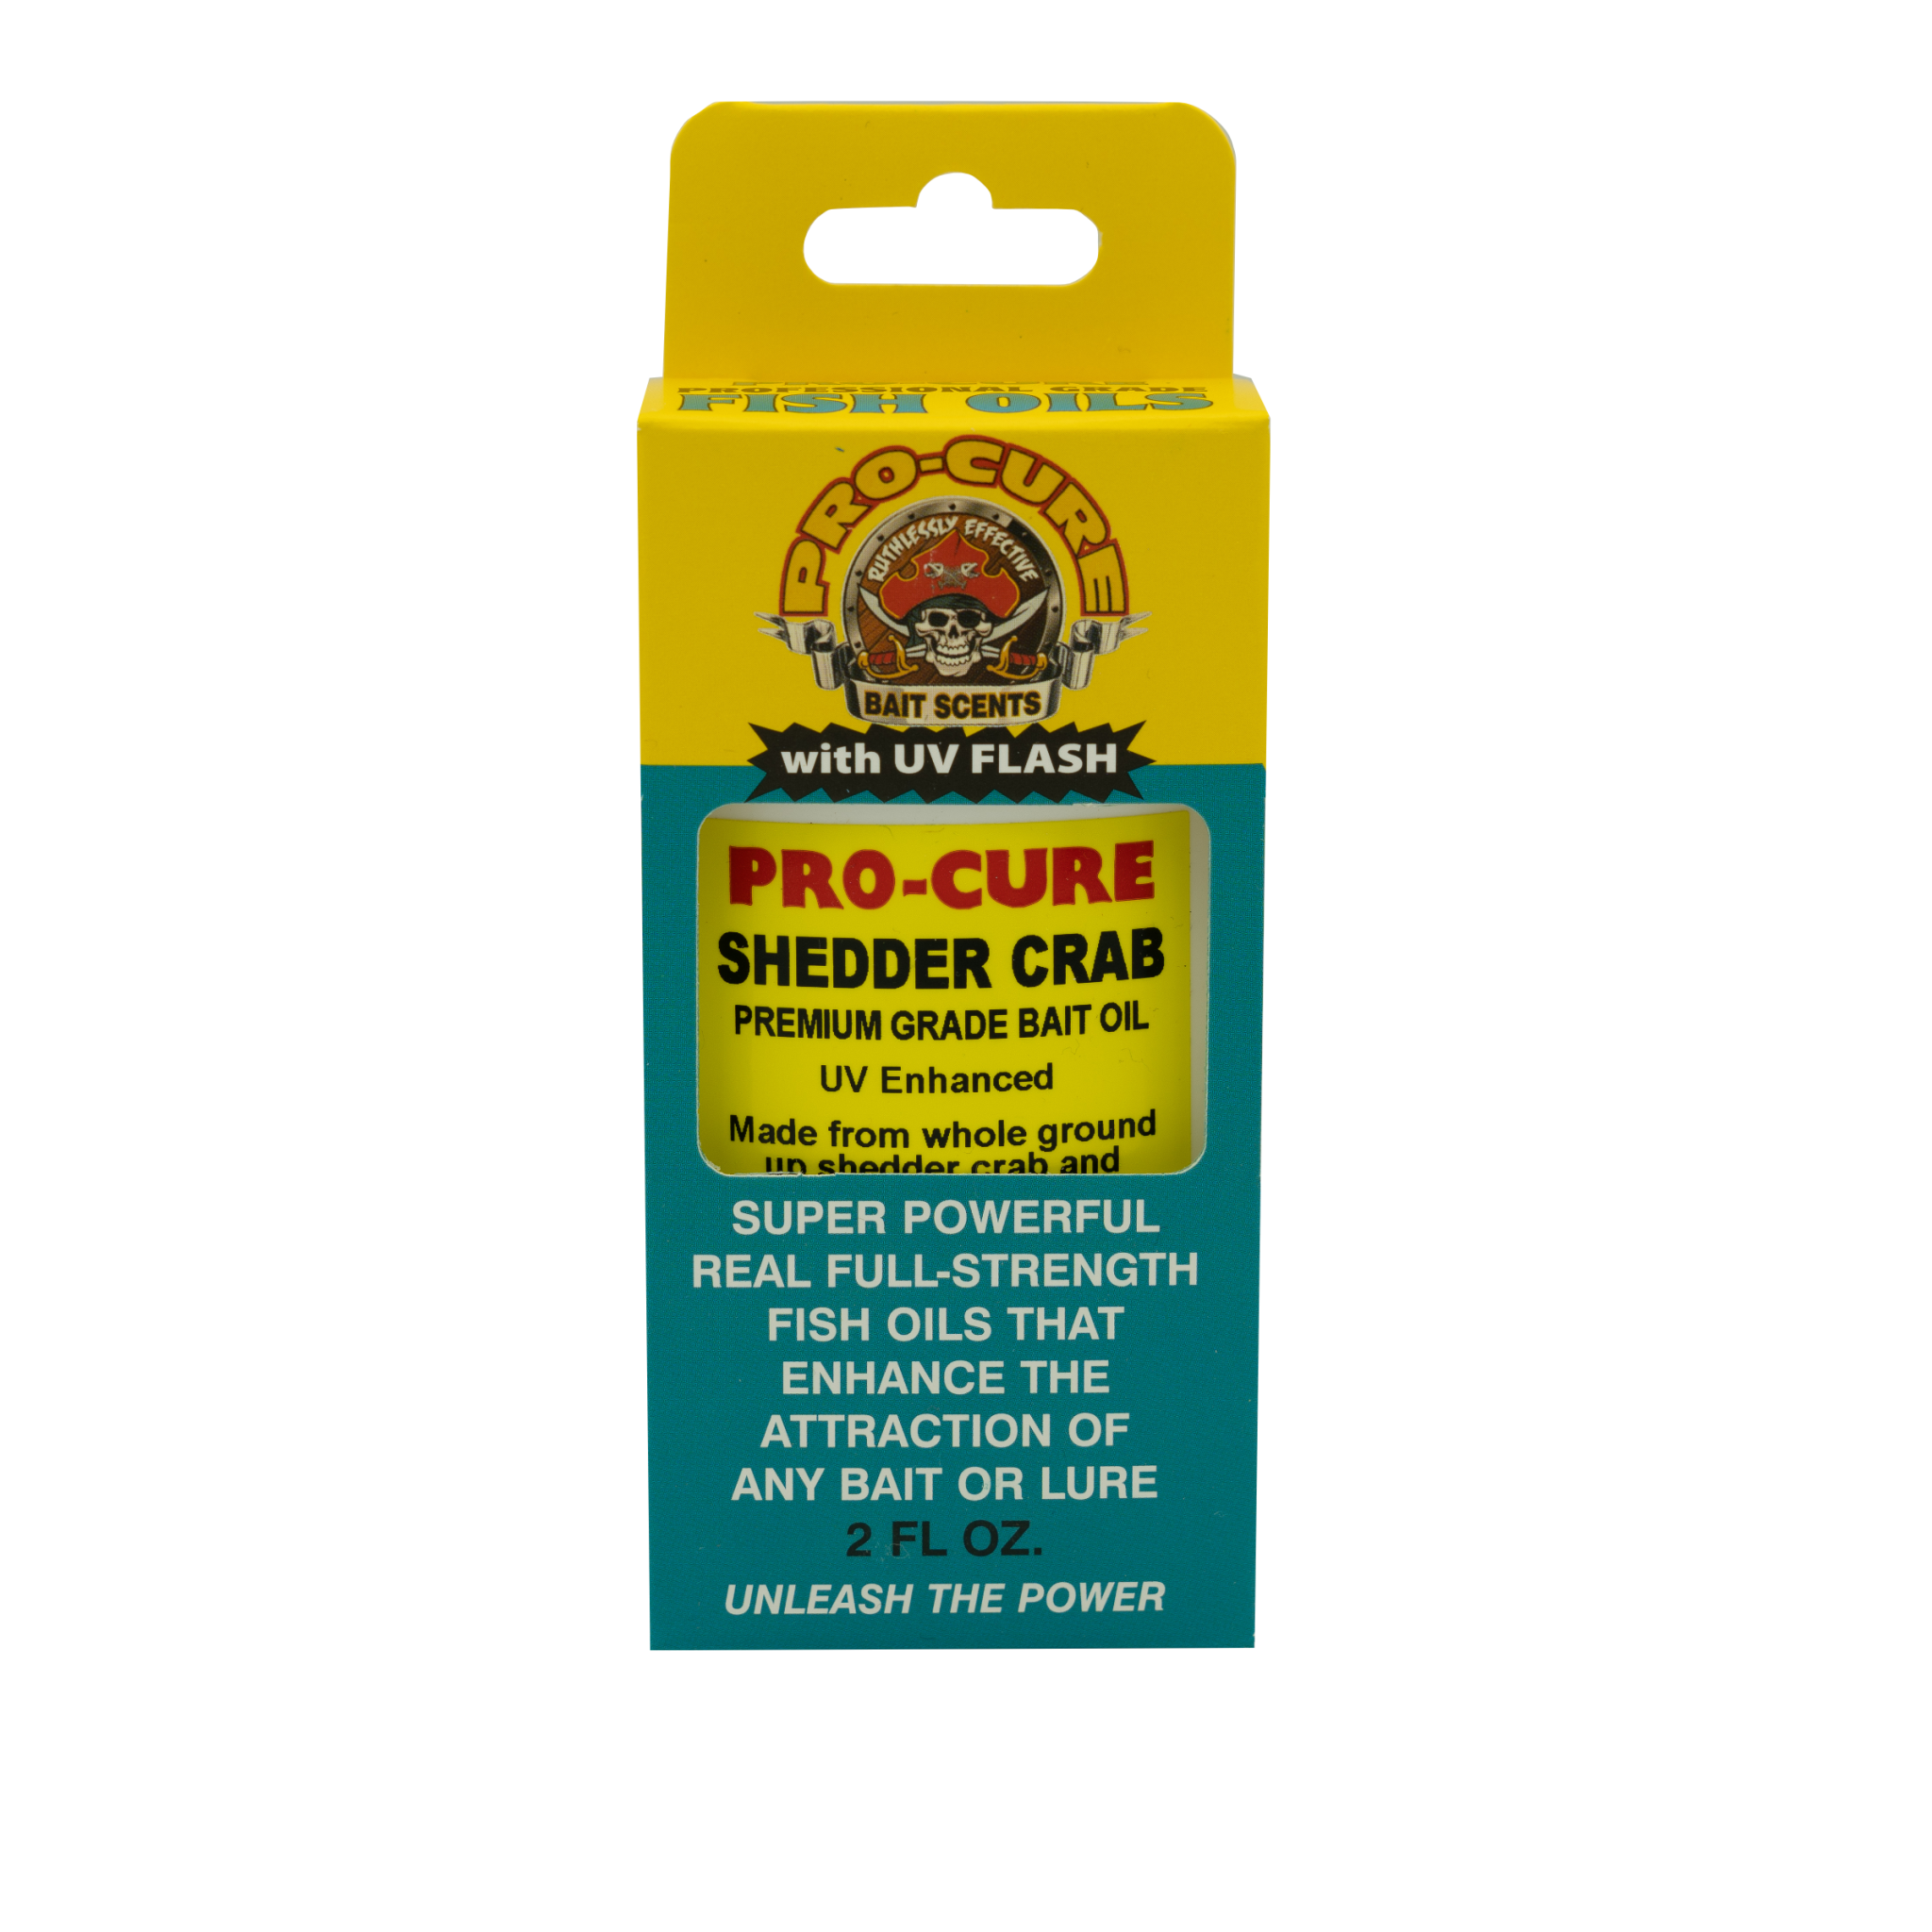 KENAI COCKTAIL JUICE BAIT OIL – Pro-Cure, Inc